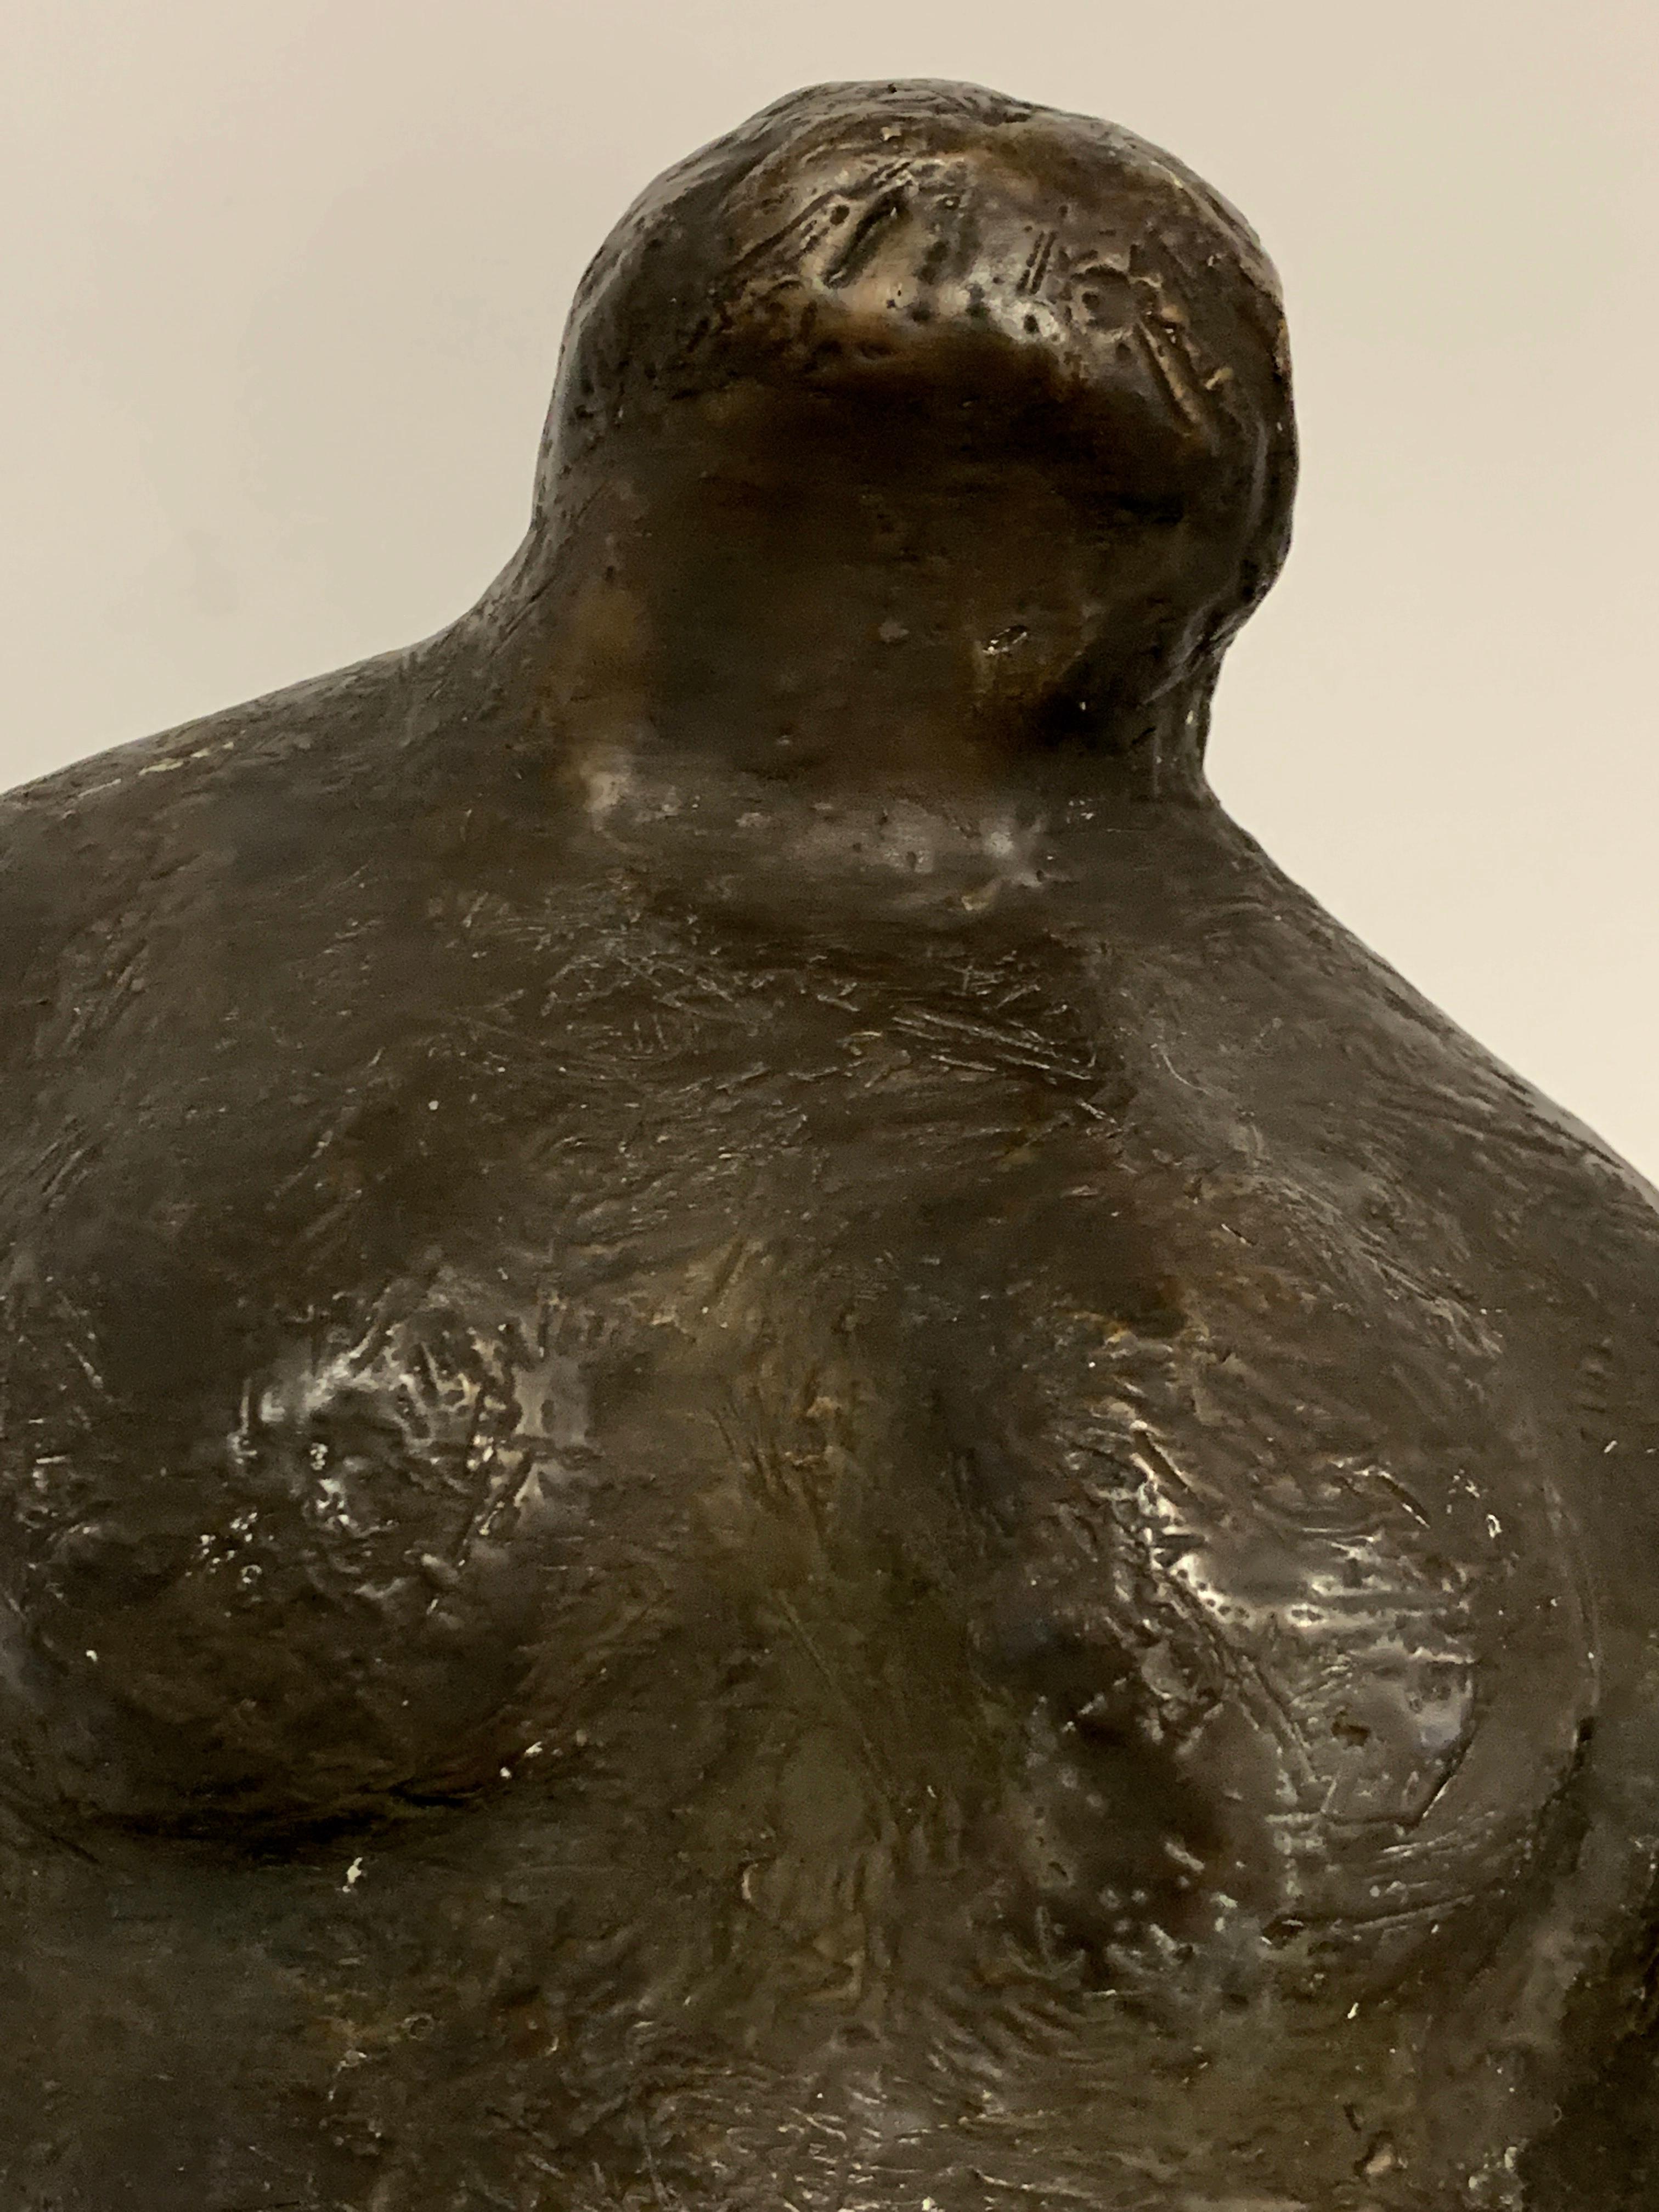 Bronzeskulptur eines amerikanischen Ureinwohners, signiert Rowley AP und datiert 2000. Es handelt sich um einen Künstlerabzug des amerikanischen Künstlers Rick Rowley, wie wir glauben. Schöne Patina. In gutem Zustand mit Filz entlang des unteren